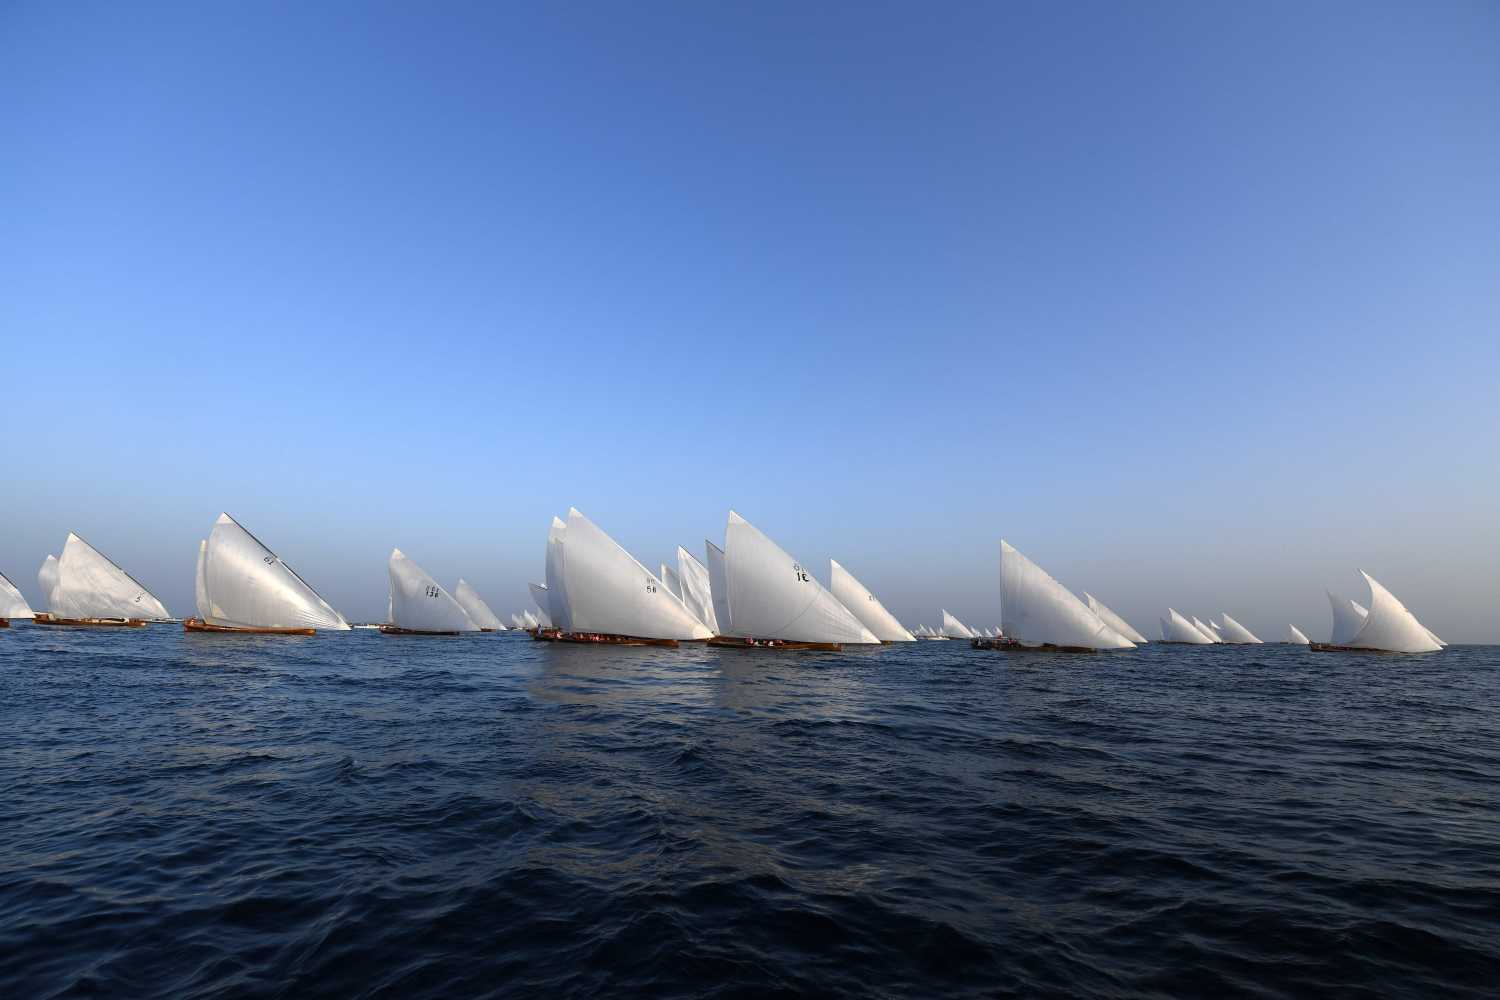 Campeonato de vela de larga distancia, conocida como al-Gaffal, cerca de la isla de Sir Abu Nuair hacia Dubai